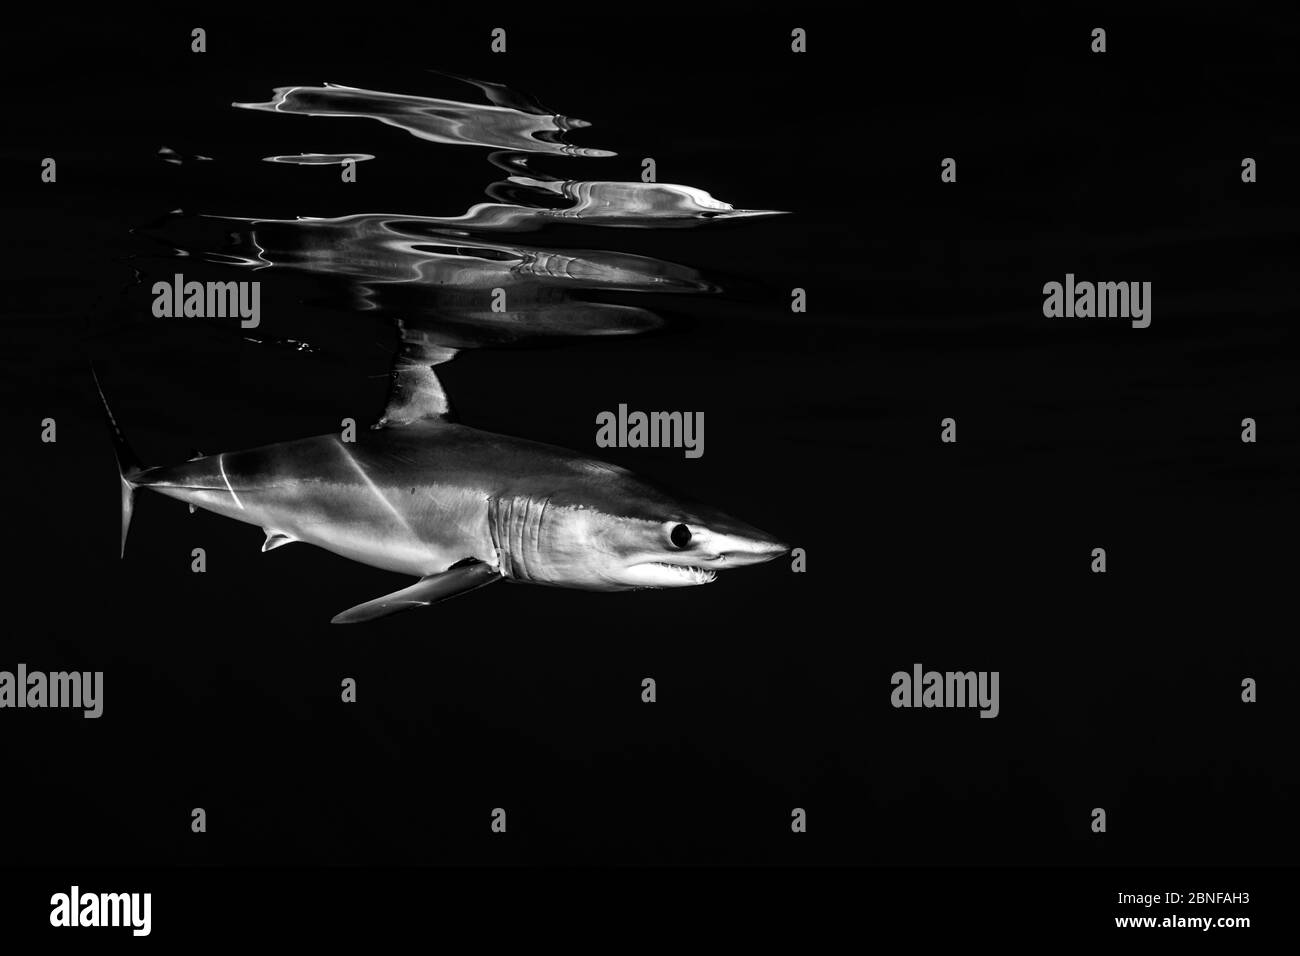 Shortfin mako shark and reflections Stock Photo